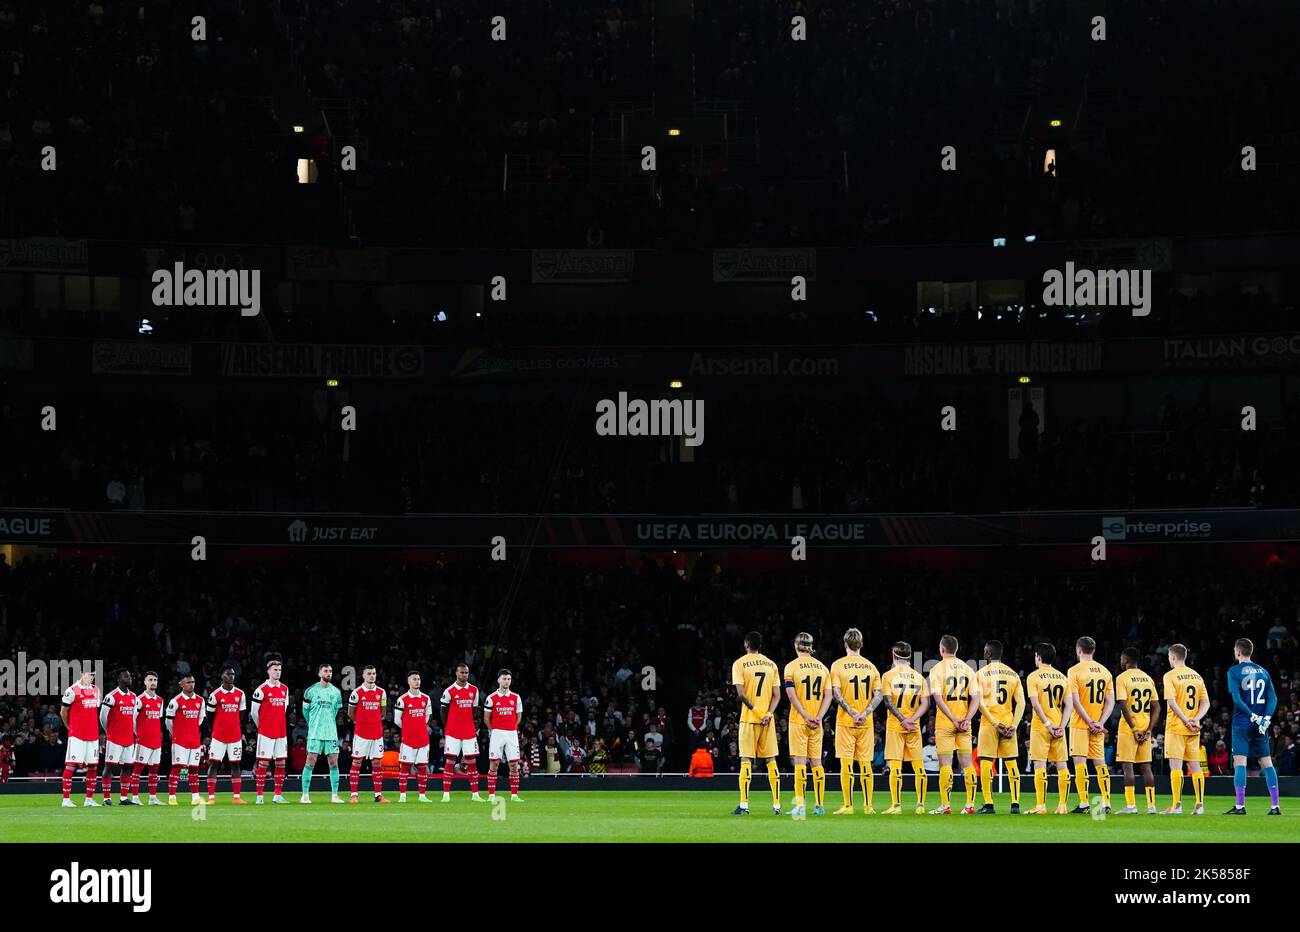 Die Spieler von Arsenal und FK Bodo/Glimt beobachten einen Moment der Stille in Erinnerung an die Opfer der Katastrophe im Kanjuruhan-Stadion in Indonesien während des Spiels der UEFA Europa League im Emirates Stadium in London. Bilddatum: Donnerstag, 6. Oktober 2022. Stockfoto